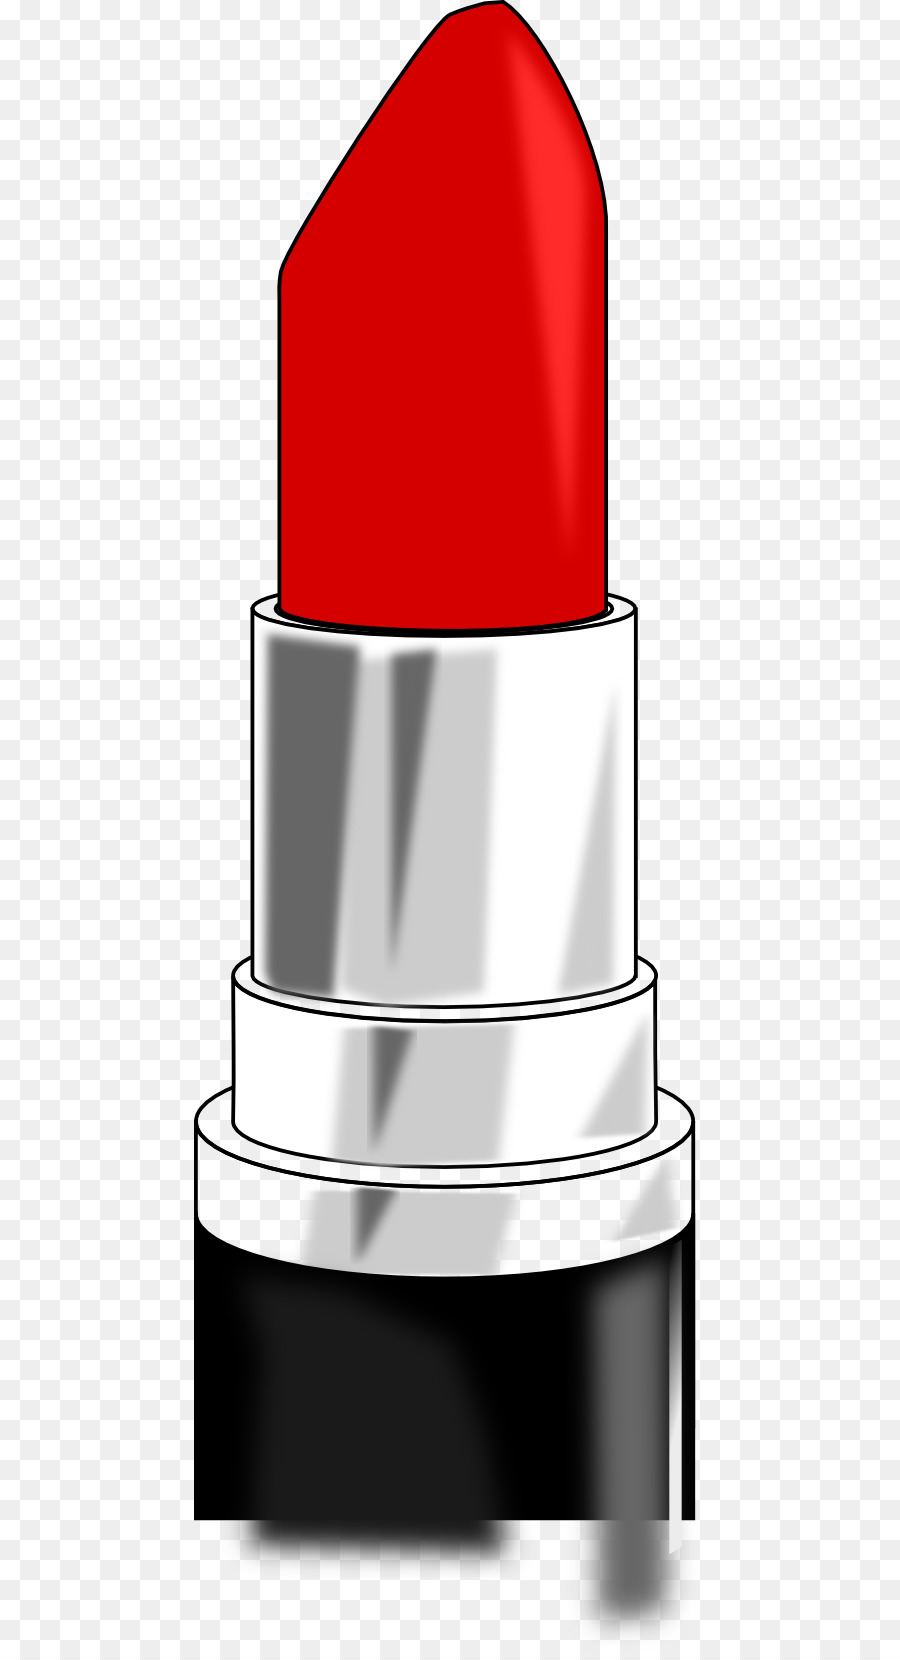 Lipstick Cartoon Cosmetics Clip art - Lipstick Cliparts png download - 512*1652 - Free Transparent Lipstick png Download.